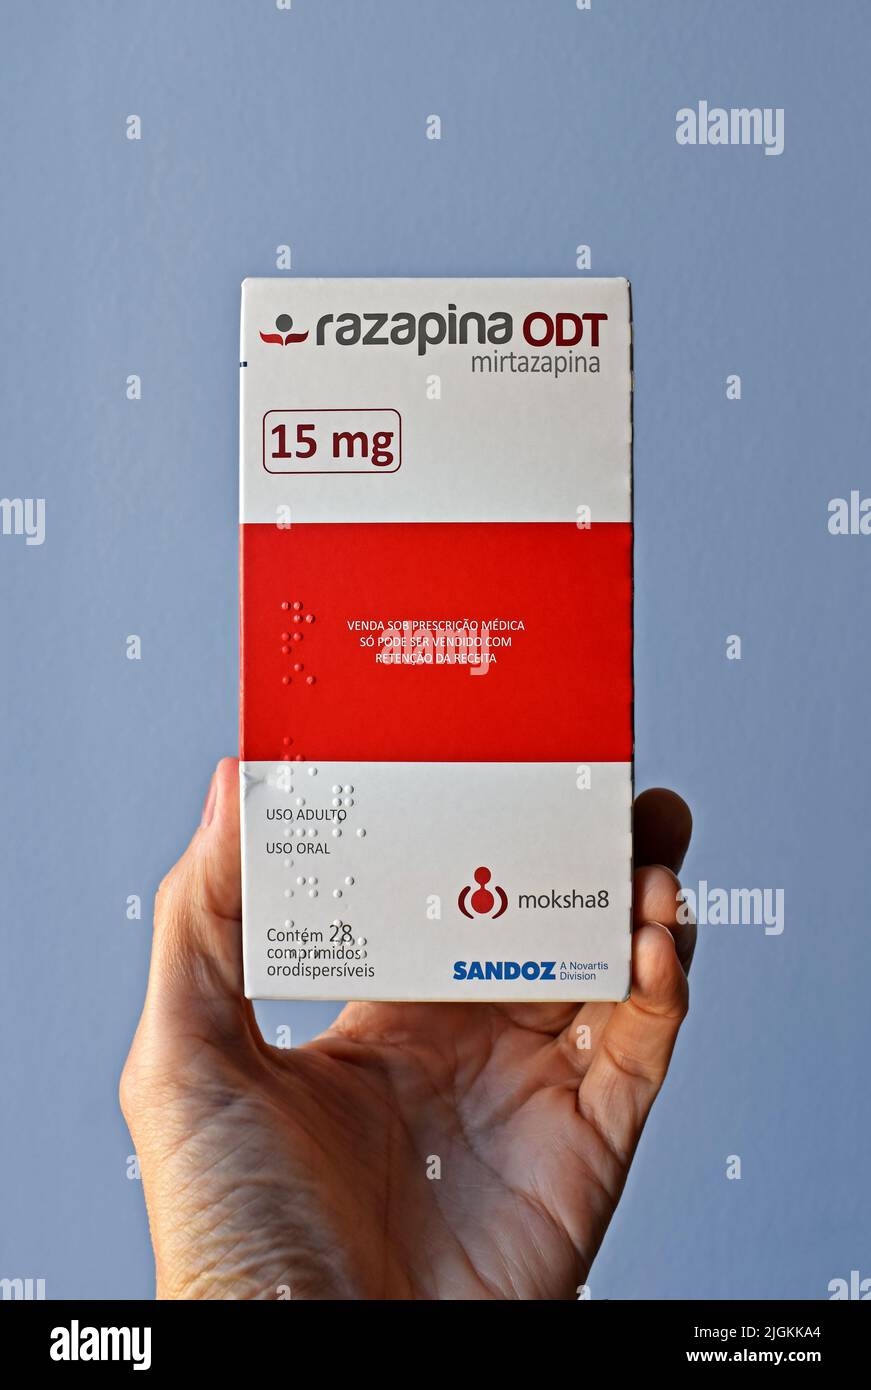 RÍO DE JANEIRO, BRASIL - 25 DE JUNIO de 2022: Mano sosteniendo una caja de Mirtazapina 15mg (Razapina), un medicamento antidepresivo Foto de stock